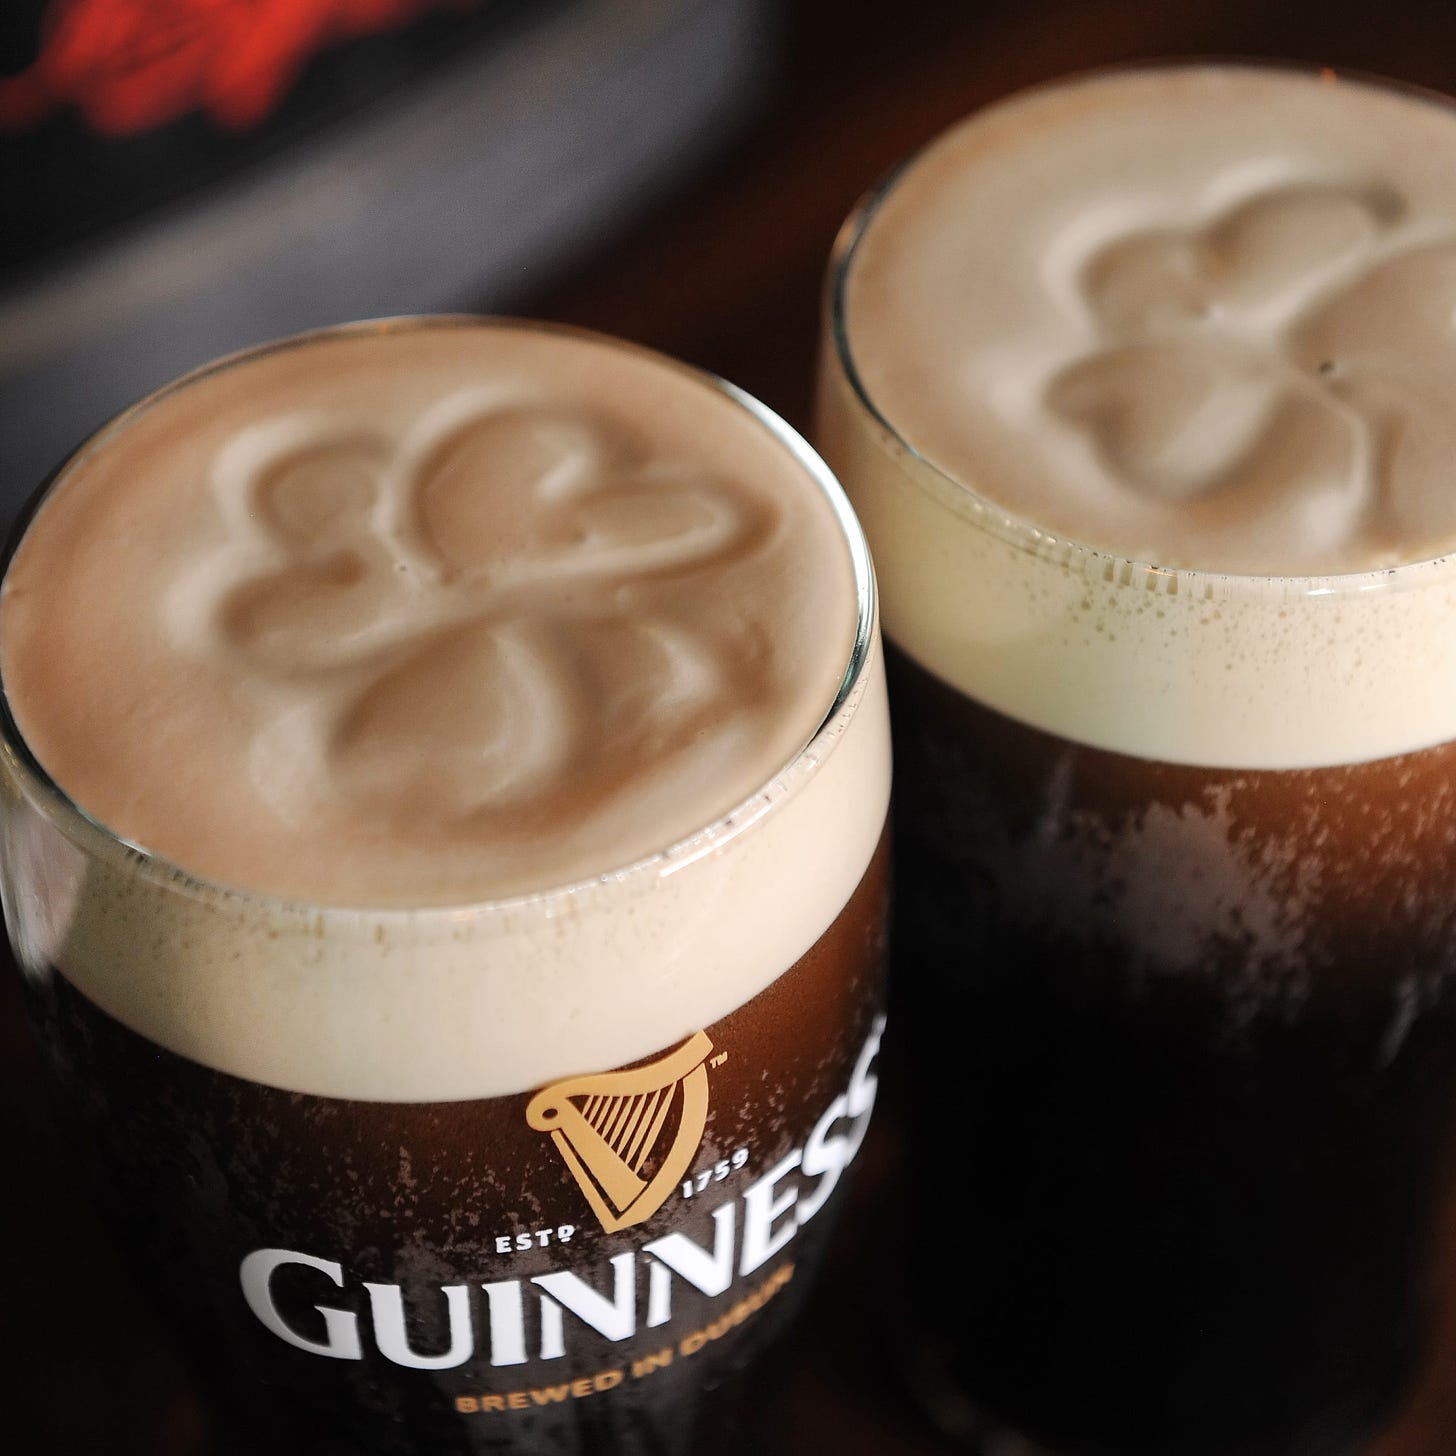 6 Irish pubs that pour a proper Guinness